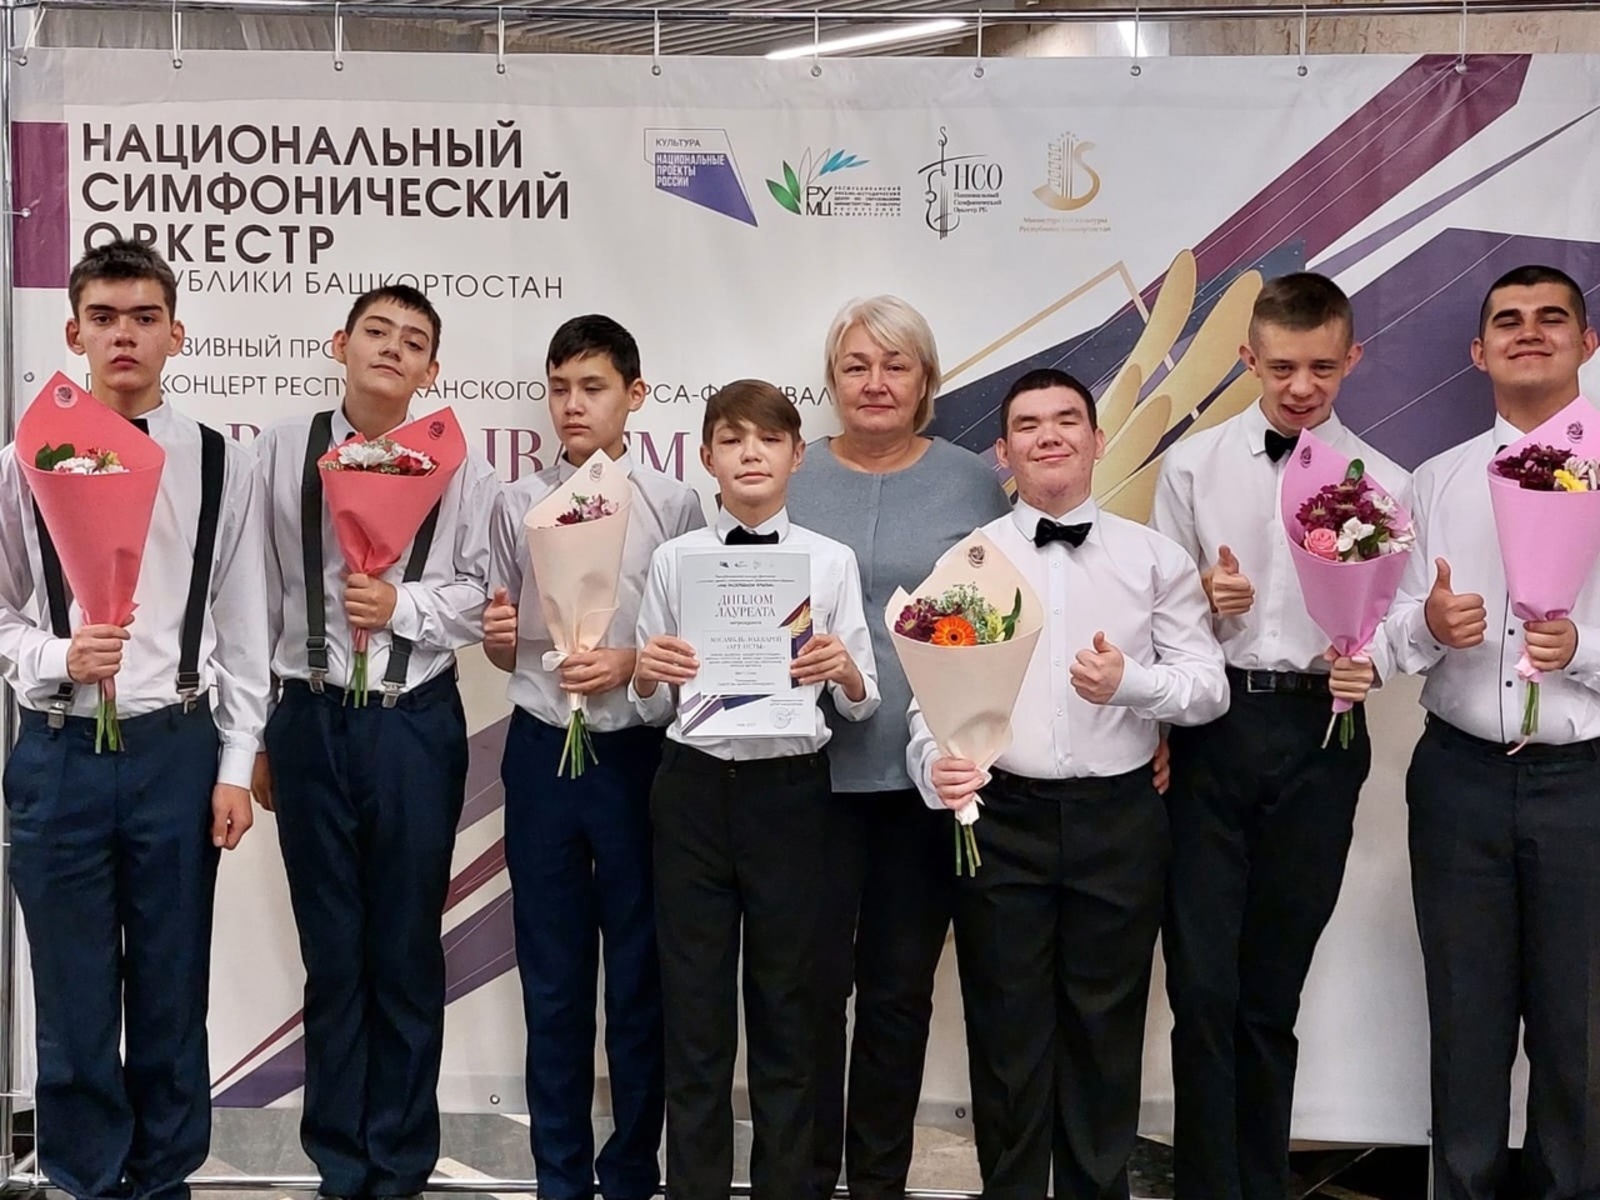 Сибайские ложкари выступили с Национальным симфоническим оркестром Башкирии